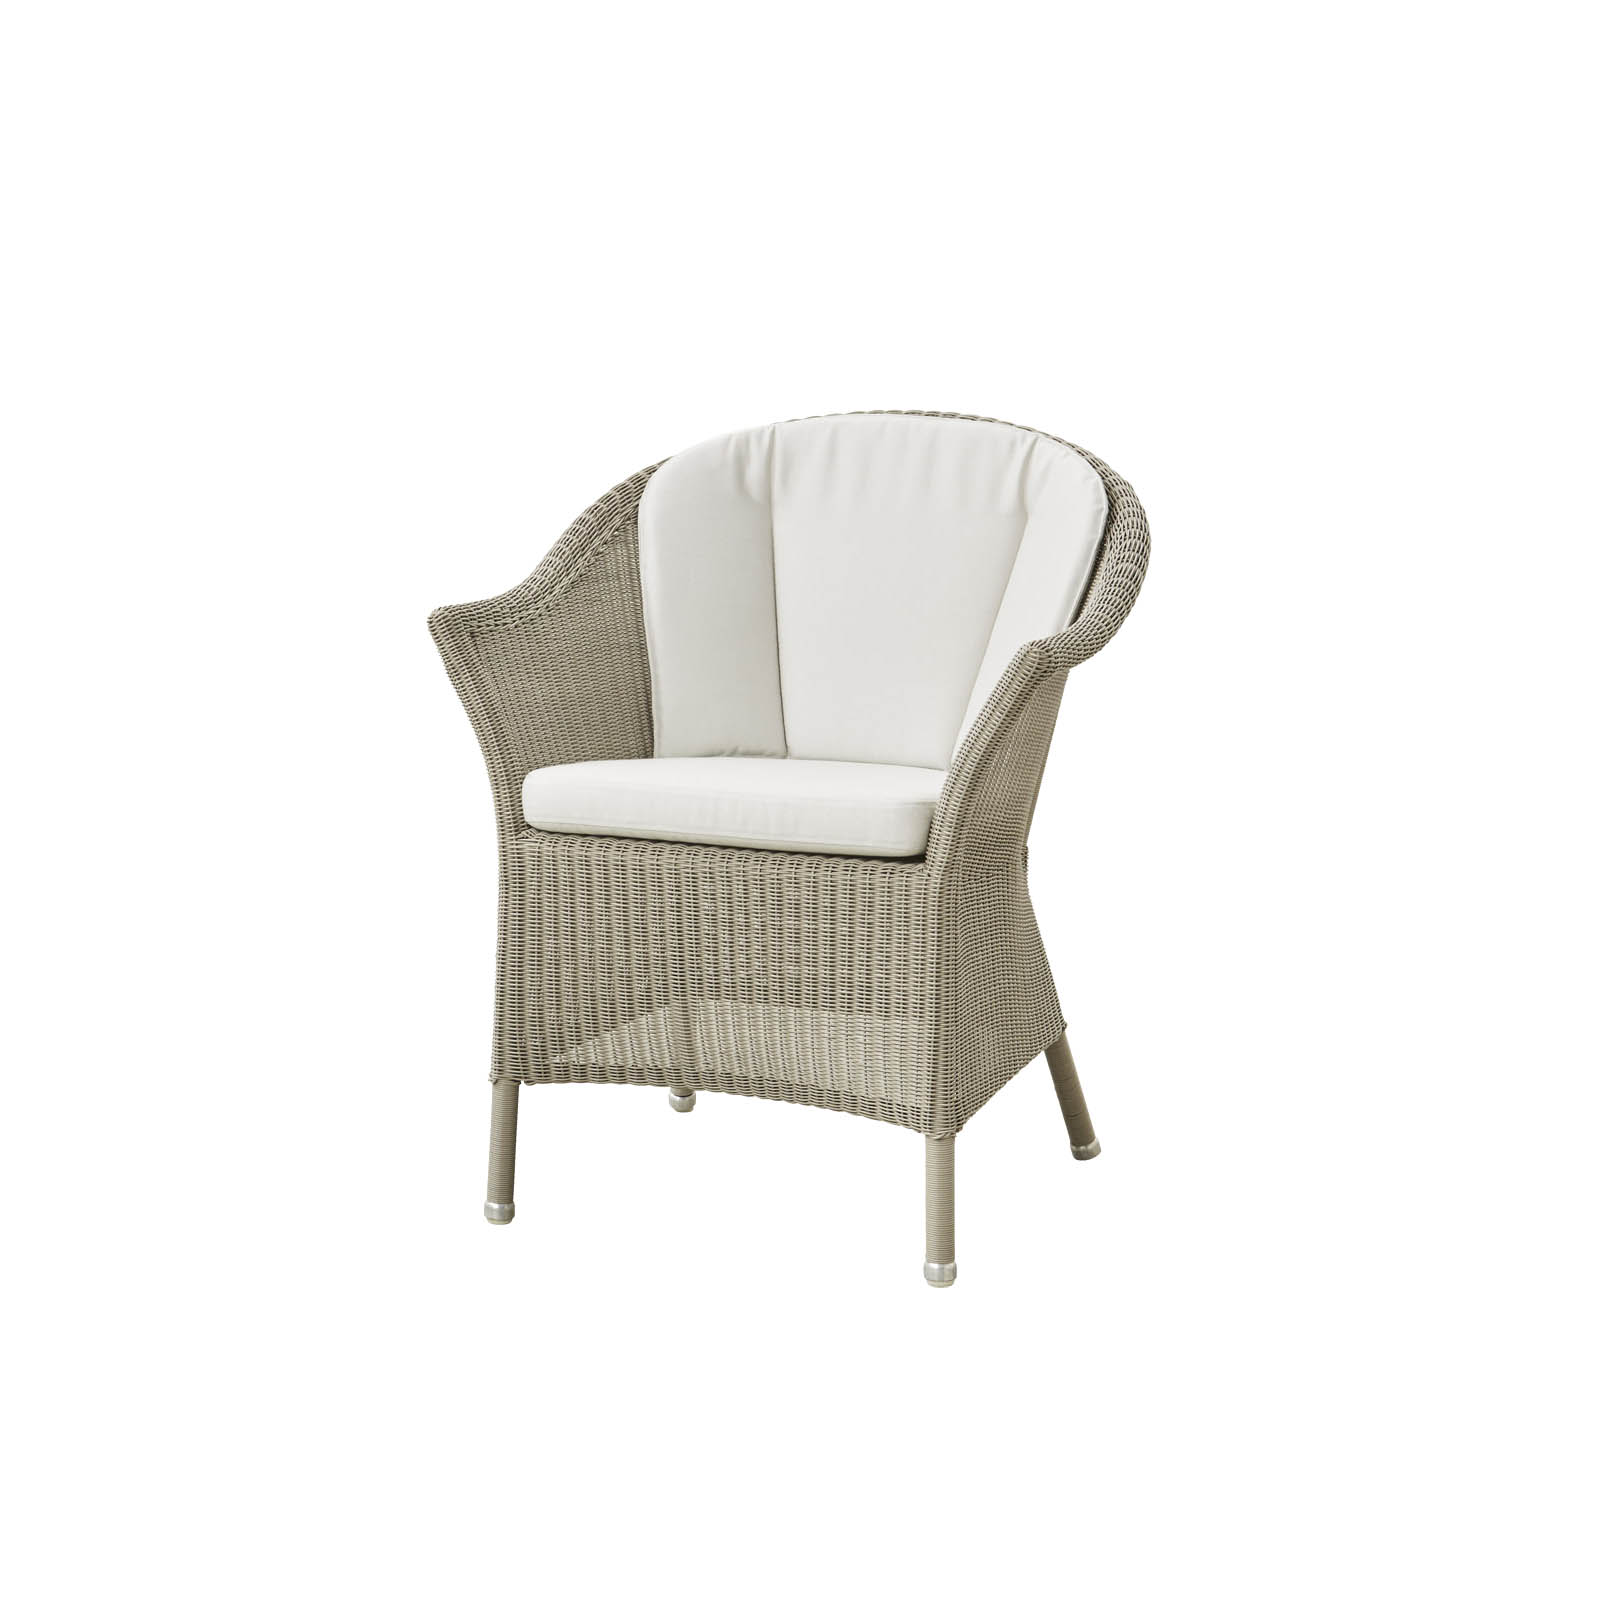 Lansing Stuhl aus Cane-line Weave in Taupe mit Kissen aus Cane-line Natté in White und Kissen aus Cane-line Natté in White